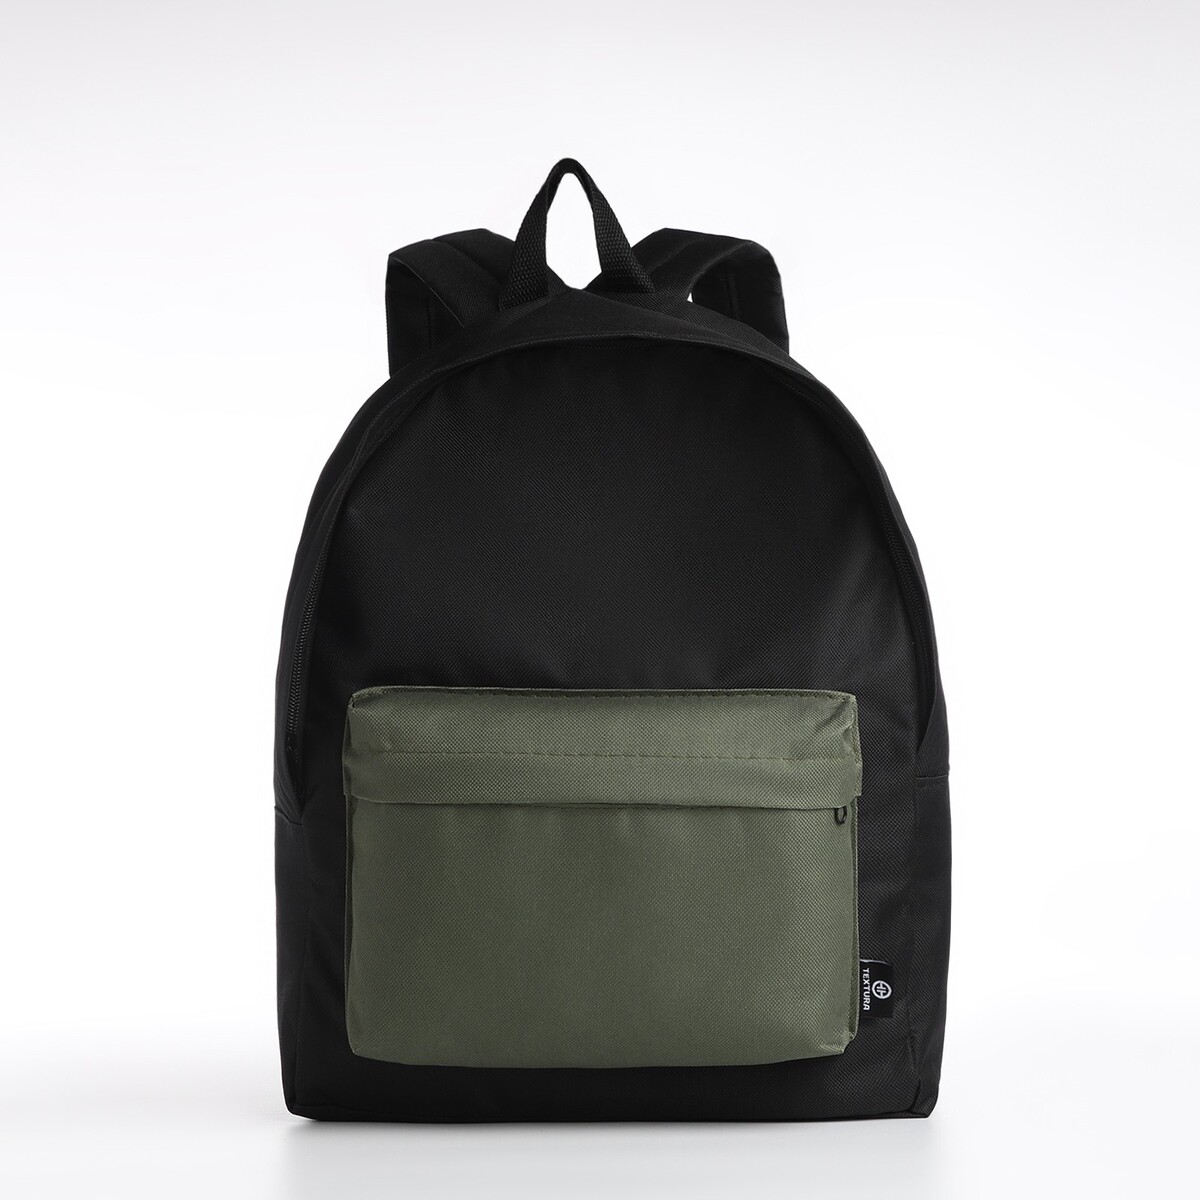 Спортивный рюкзак textura, 20 литров, цвет черный/хаки рюкзак rockbros 20 литров rb h9 bk